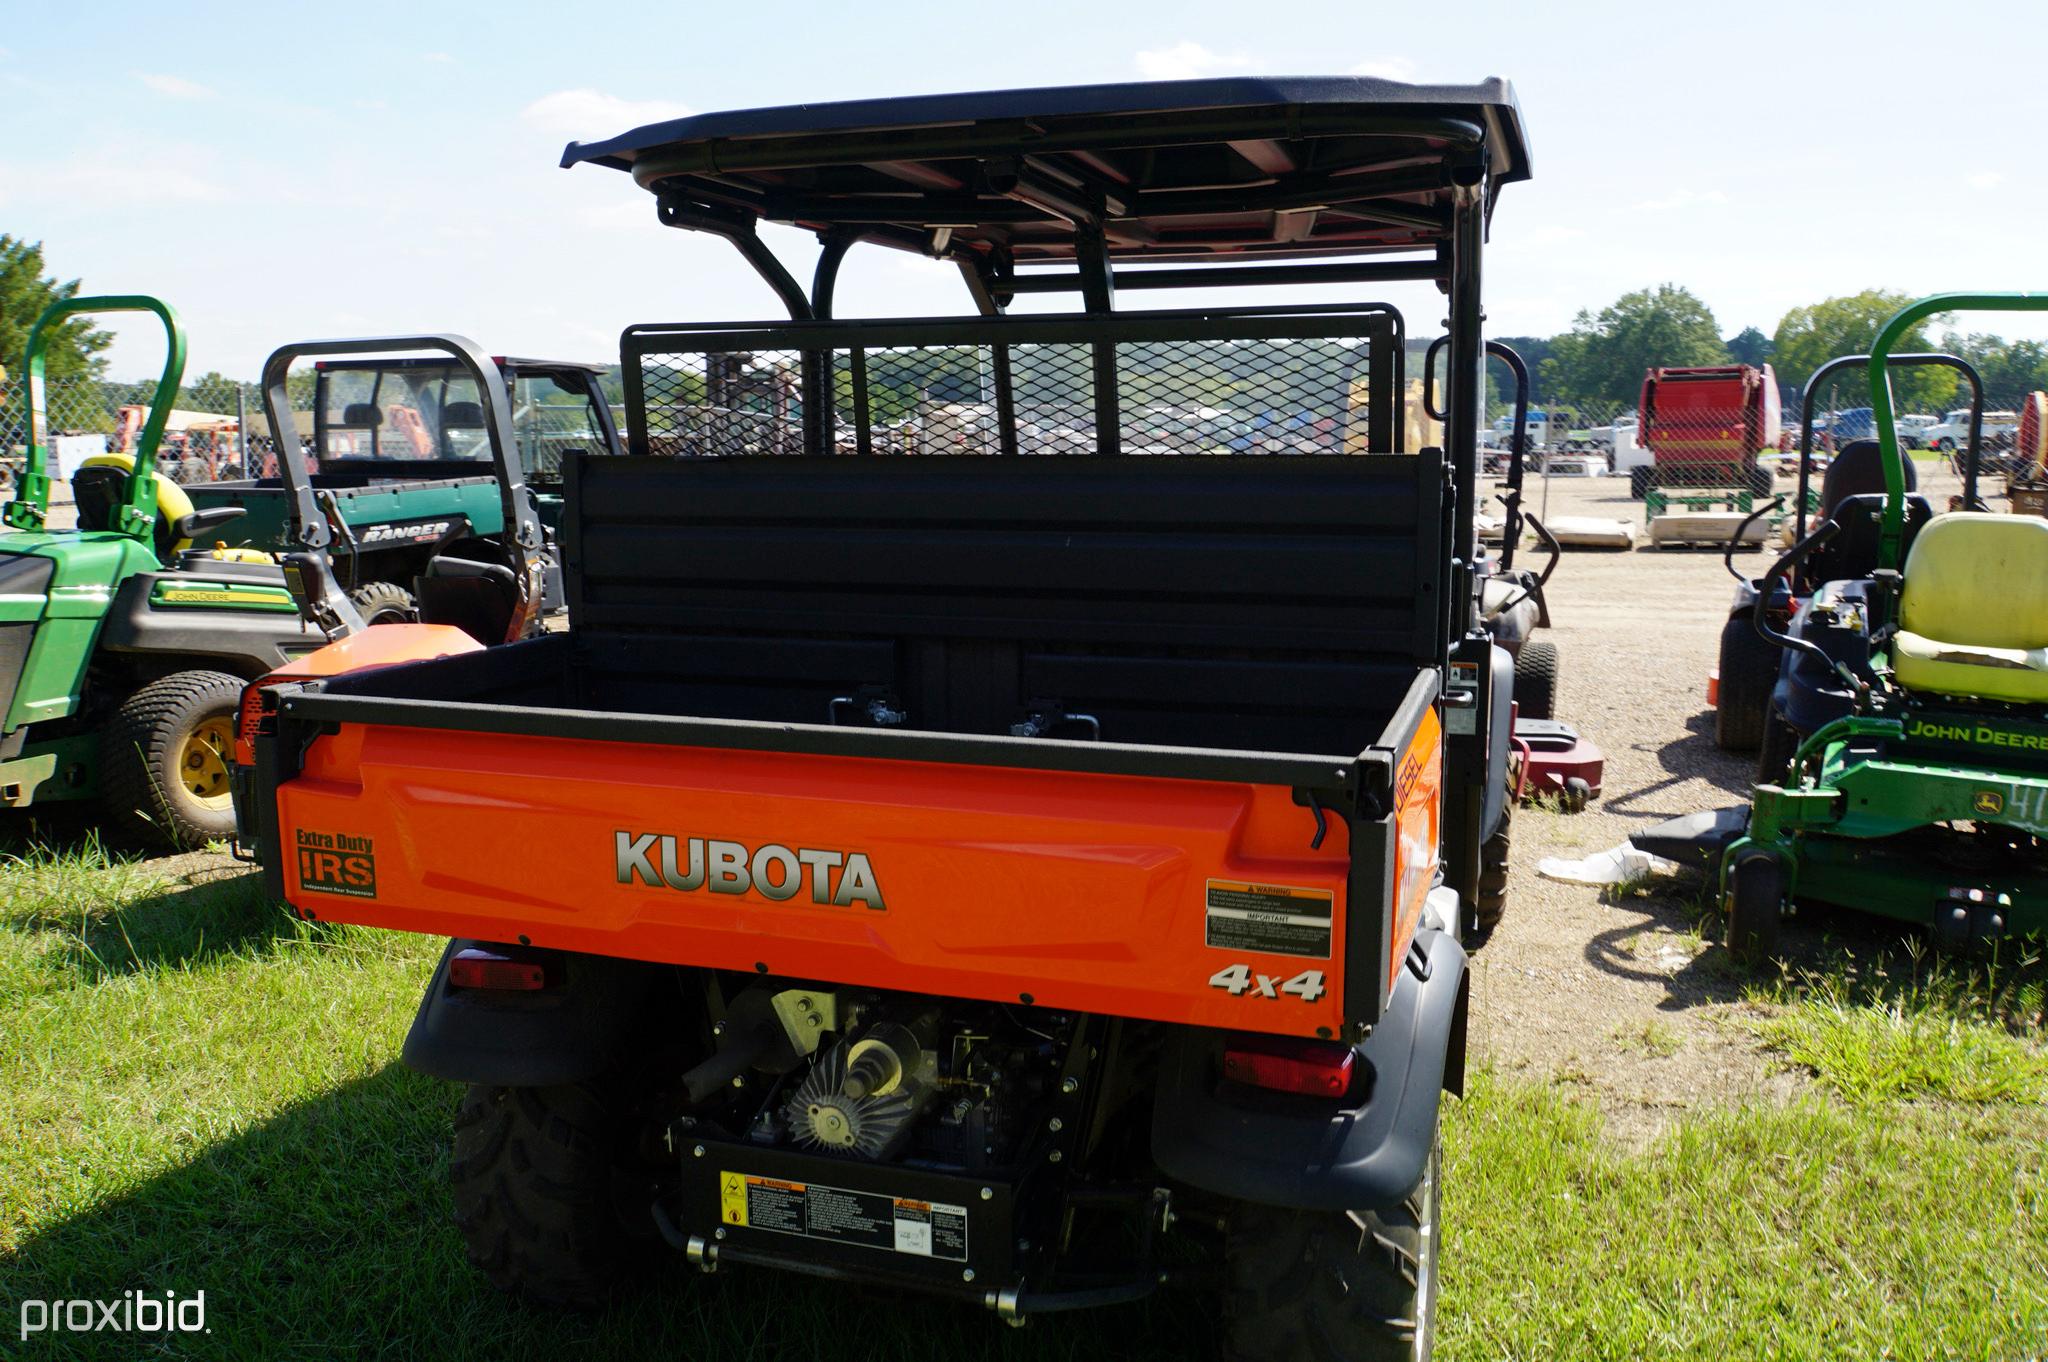 2019 Kubota RTVX-1140 4WD Utility Vehicle, s/n A5KD2GDBEKG032334 (No Title